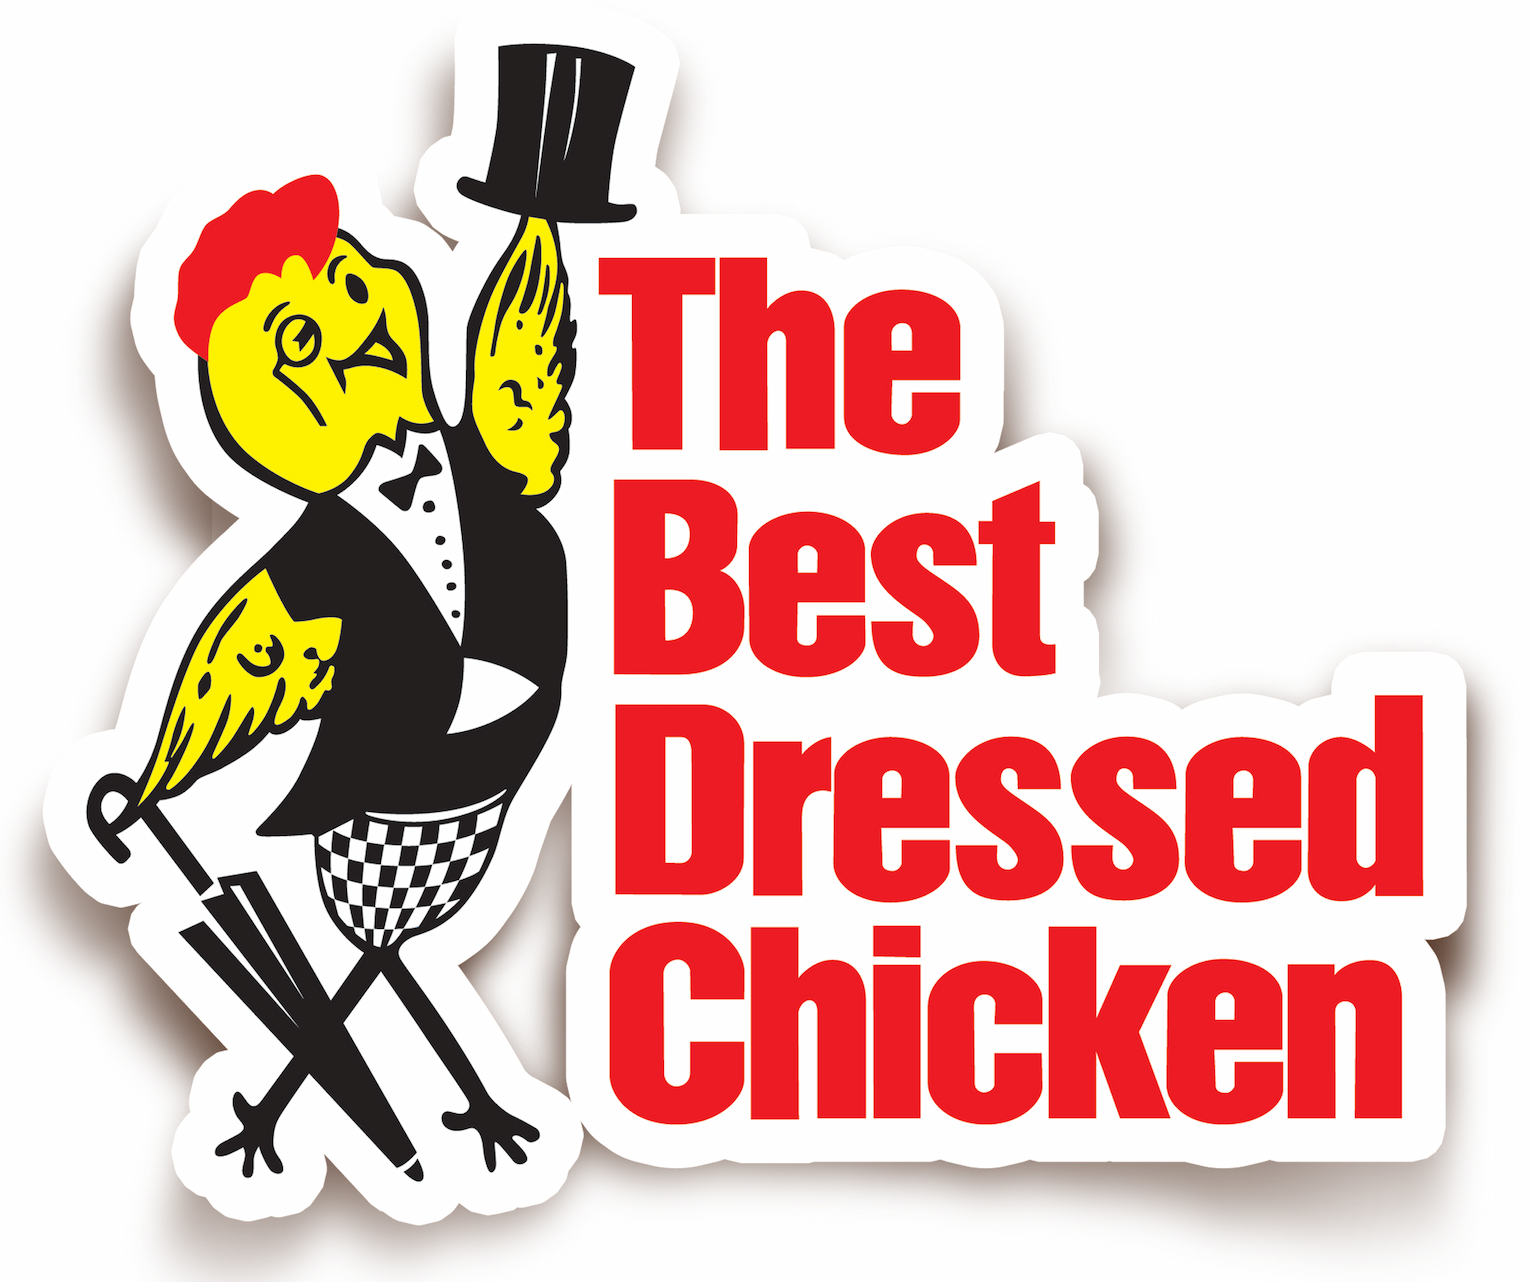 Best Dressed Chicken